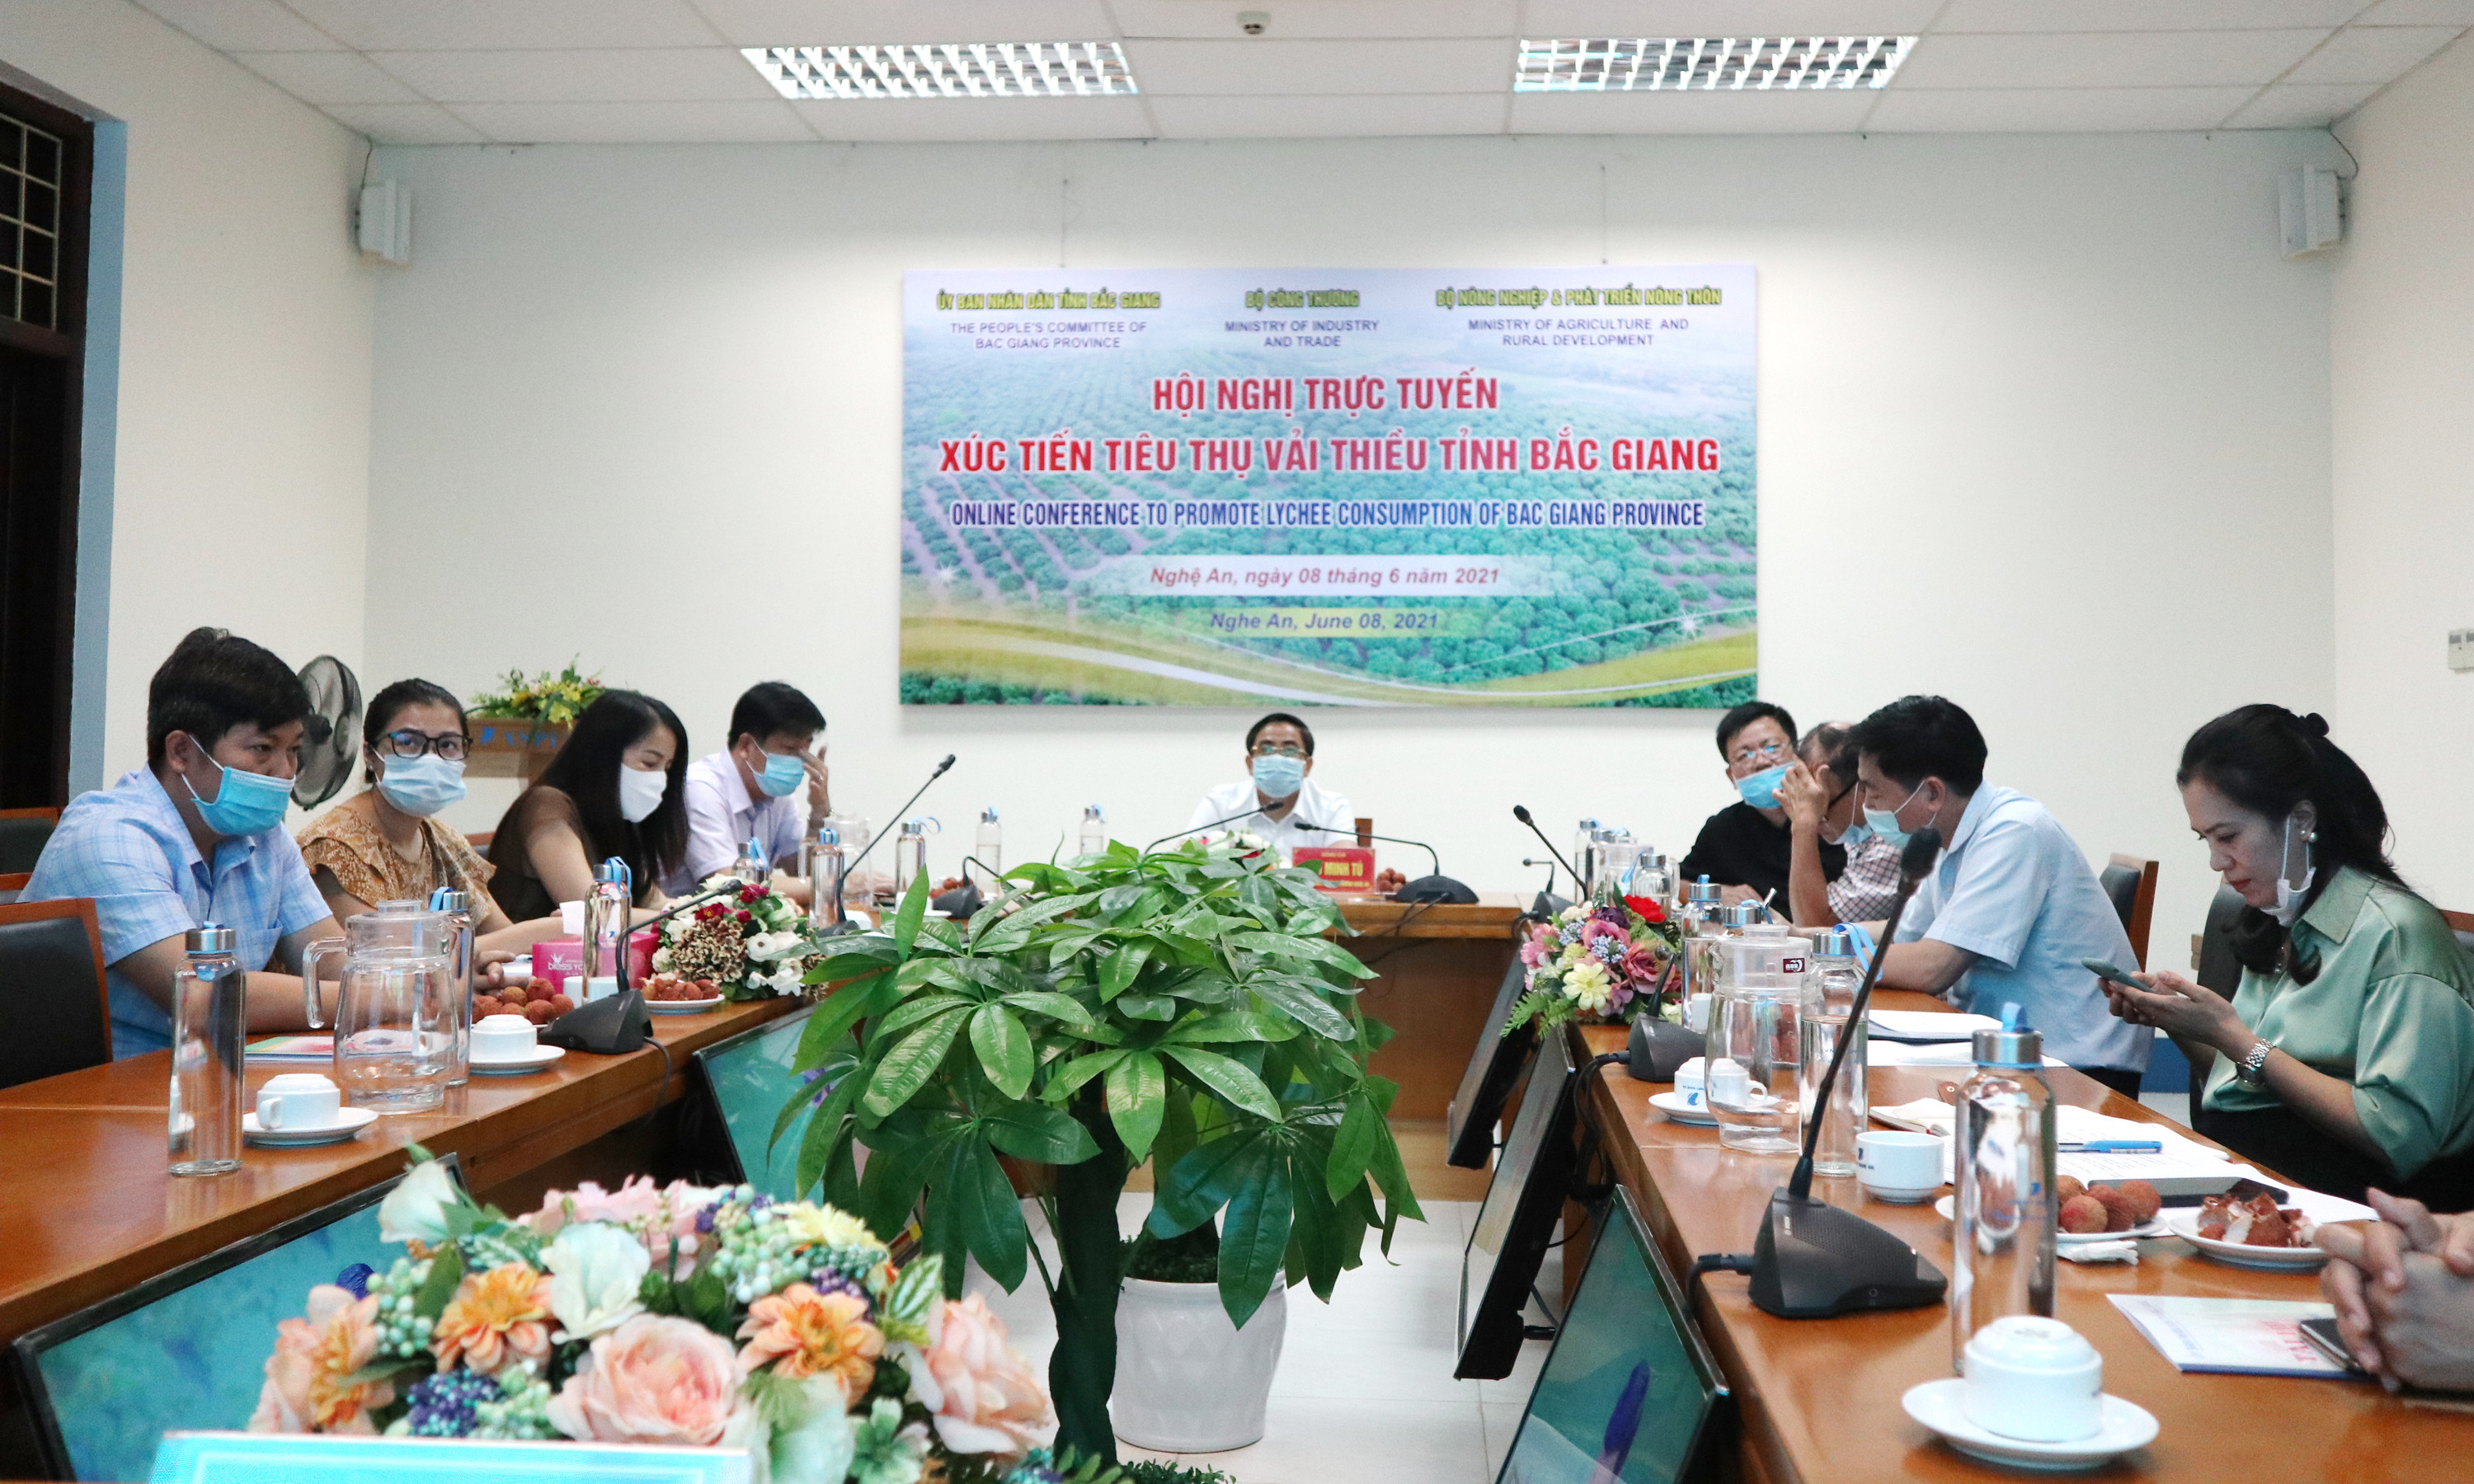 Tại điểm cầu Nghệ An, ông Cao Minh Tú, Phó Giám đốc Sở Công thương chủ trì với sự tham gia của các sở ngành liên quan, đại diện các siêu thị, trung tâm thương mại trên địa bàn tỉnh.